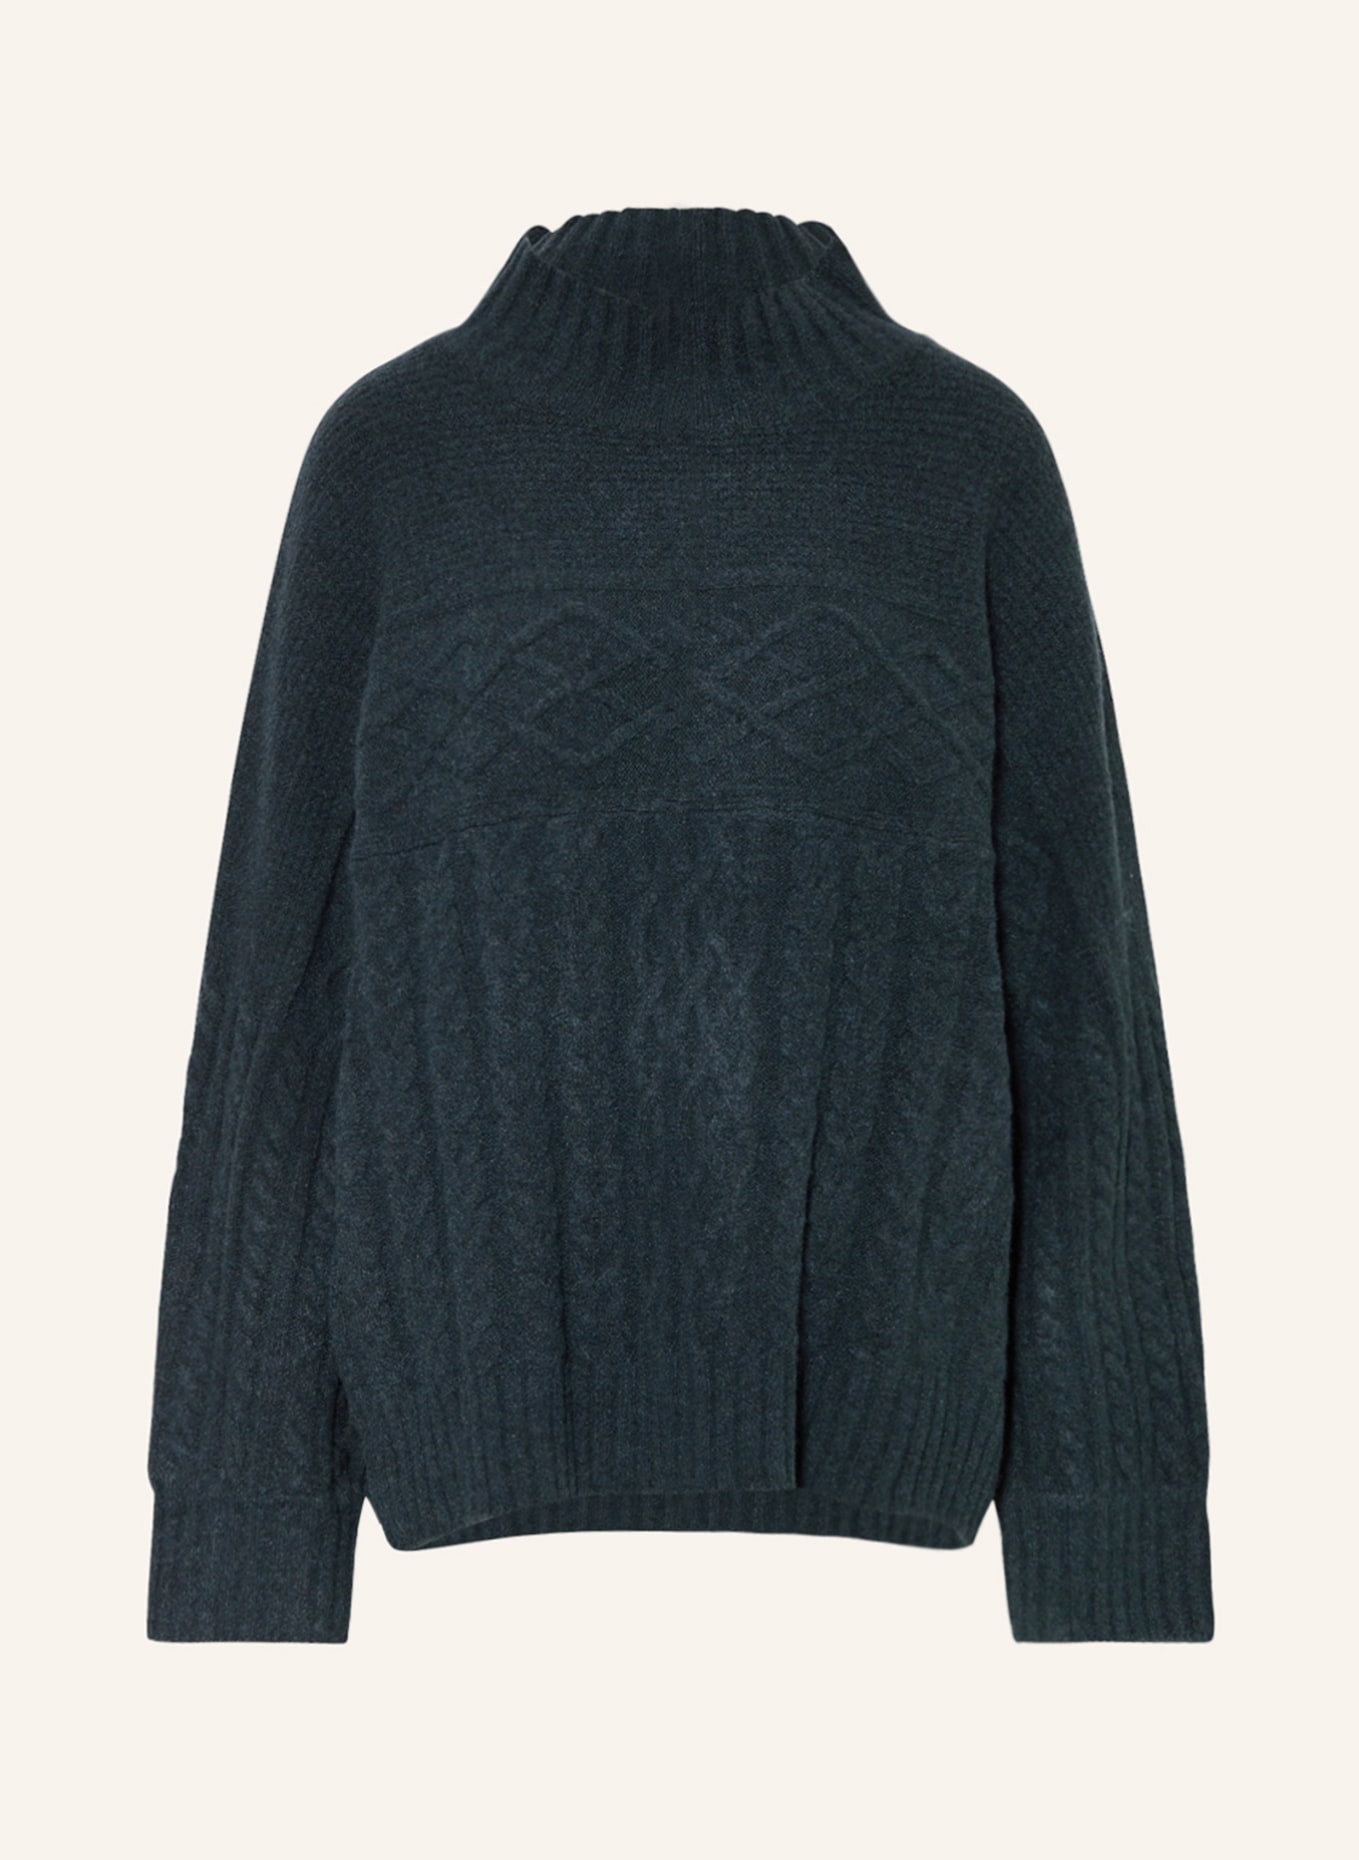 CARTOON Pullover, Farbe: DUNKELGRÜN (Bild 1)